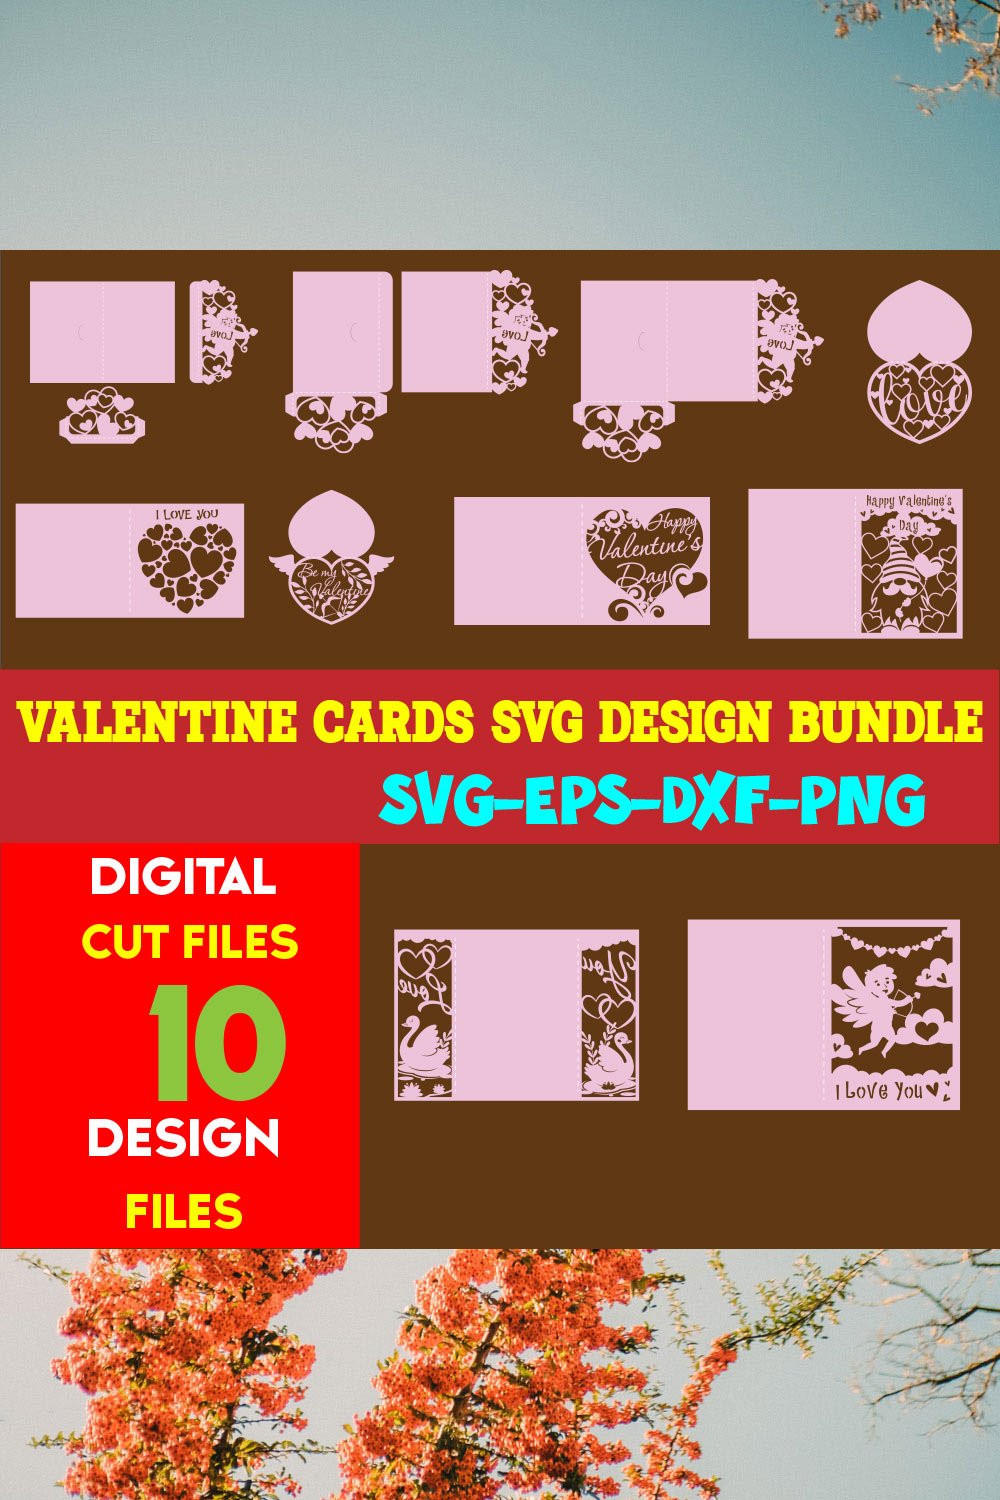 Valentine cards SVG Design Bundle pinterest preview image.